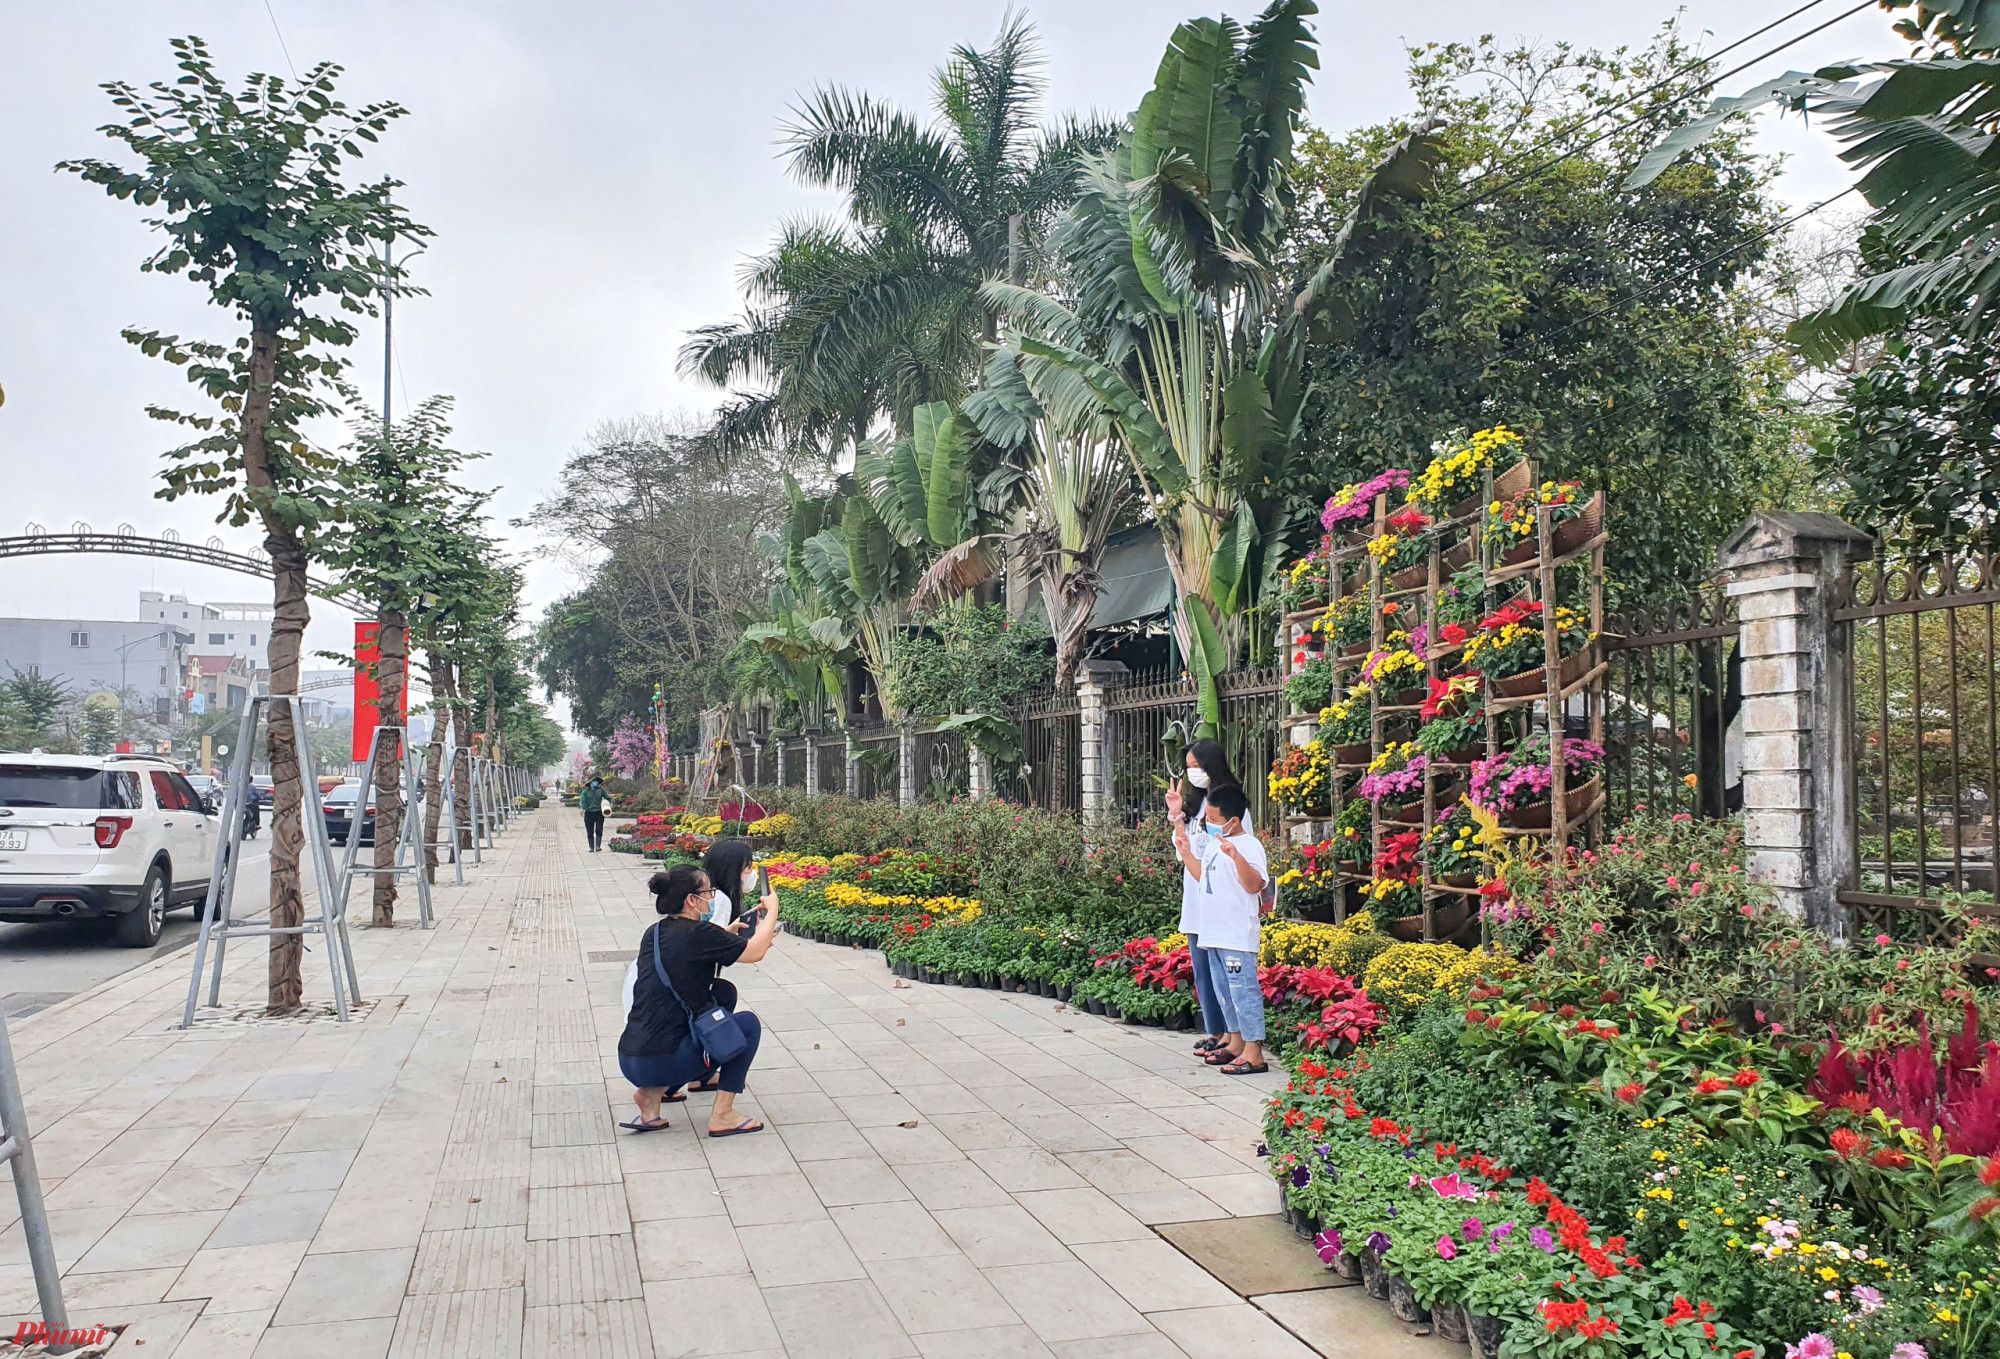 Phố đi bộ đầu tiên của thành phố Vinh được chuẩn bị hai năm qua, với quy mô khoảng 1,5km với 4 tuyến đường liên kết nhau. Đây đều là những tuyến đường trung tâm thành Vinh, có hàng trăm cơ sở kinh doanh ăn uống, thời trang, nghệ thuật, giải trí…